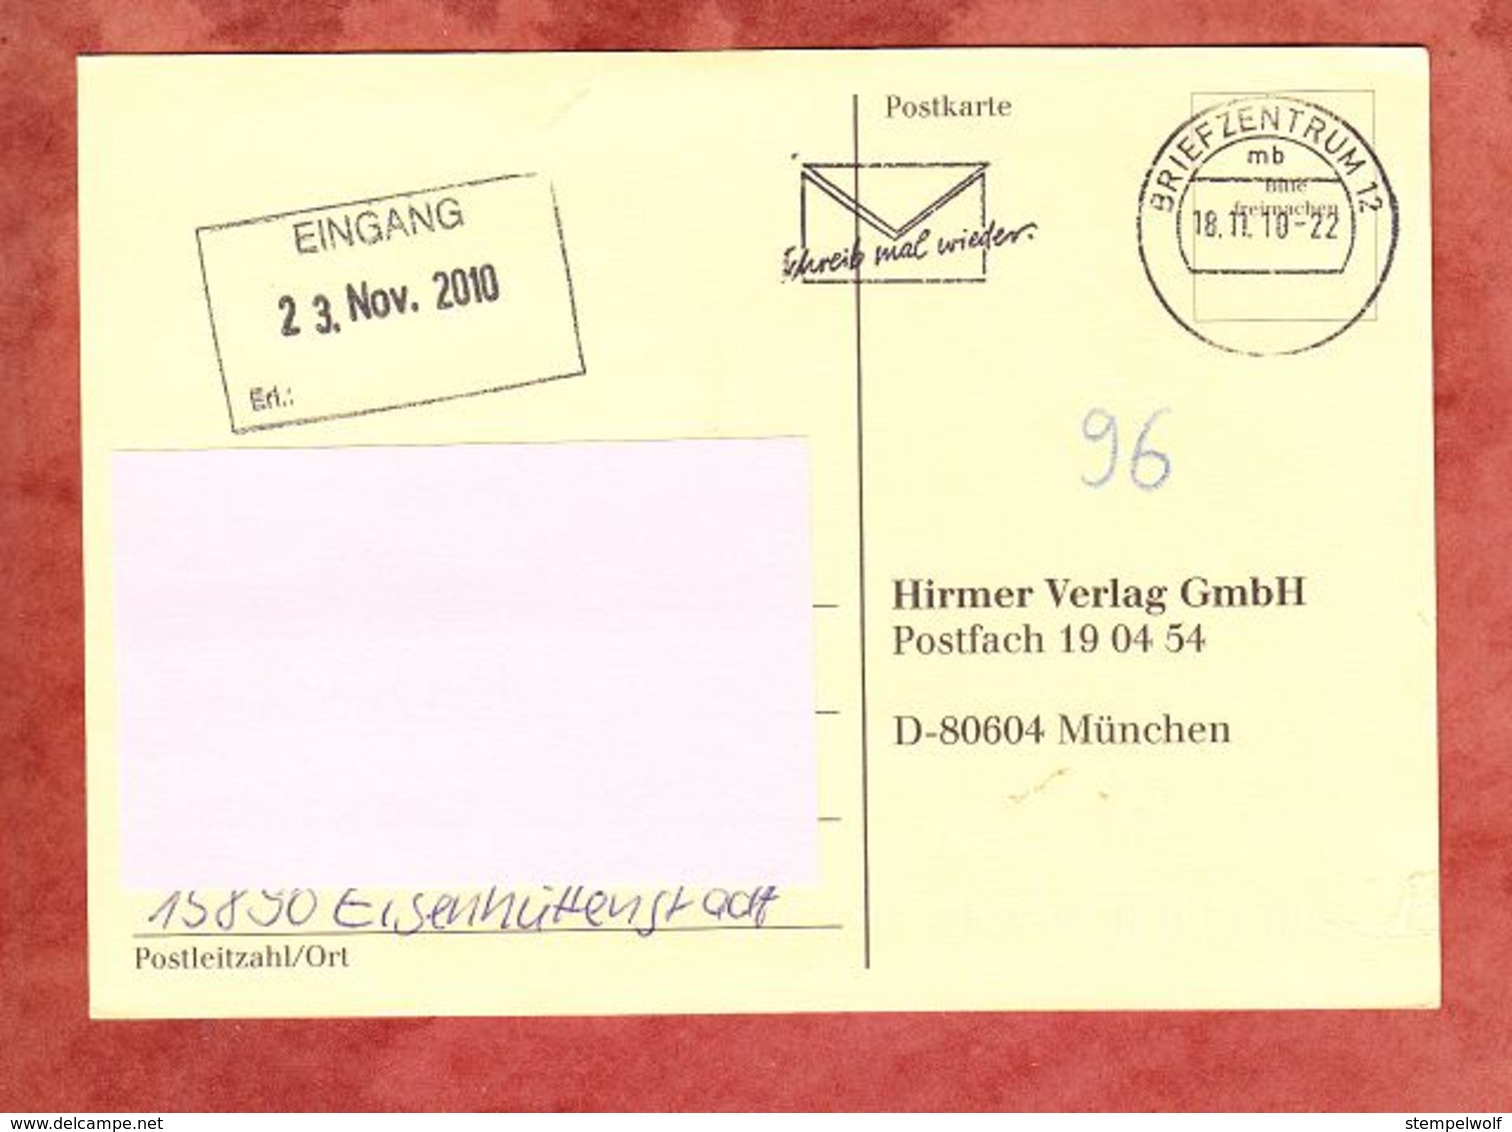 Karte, Unfrankiert, Mit Nachporto Belegt, Eisenhuettenstadt Ueber Briefzentrum 12 Nach Muenchen 2010 (69142) - Covers & Documents